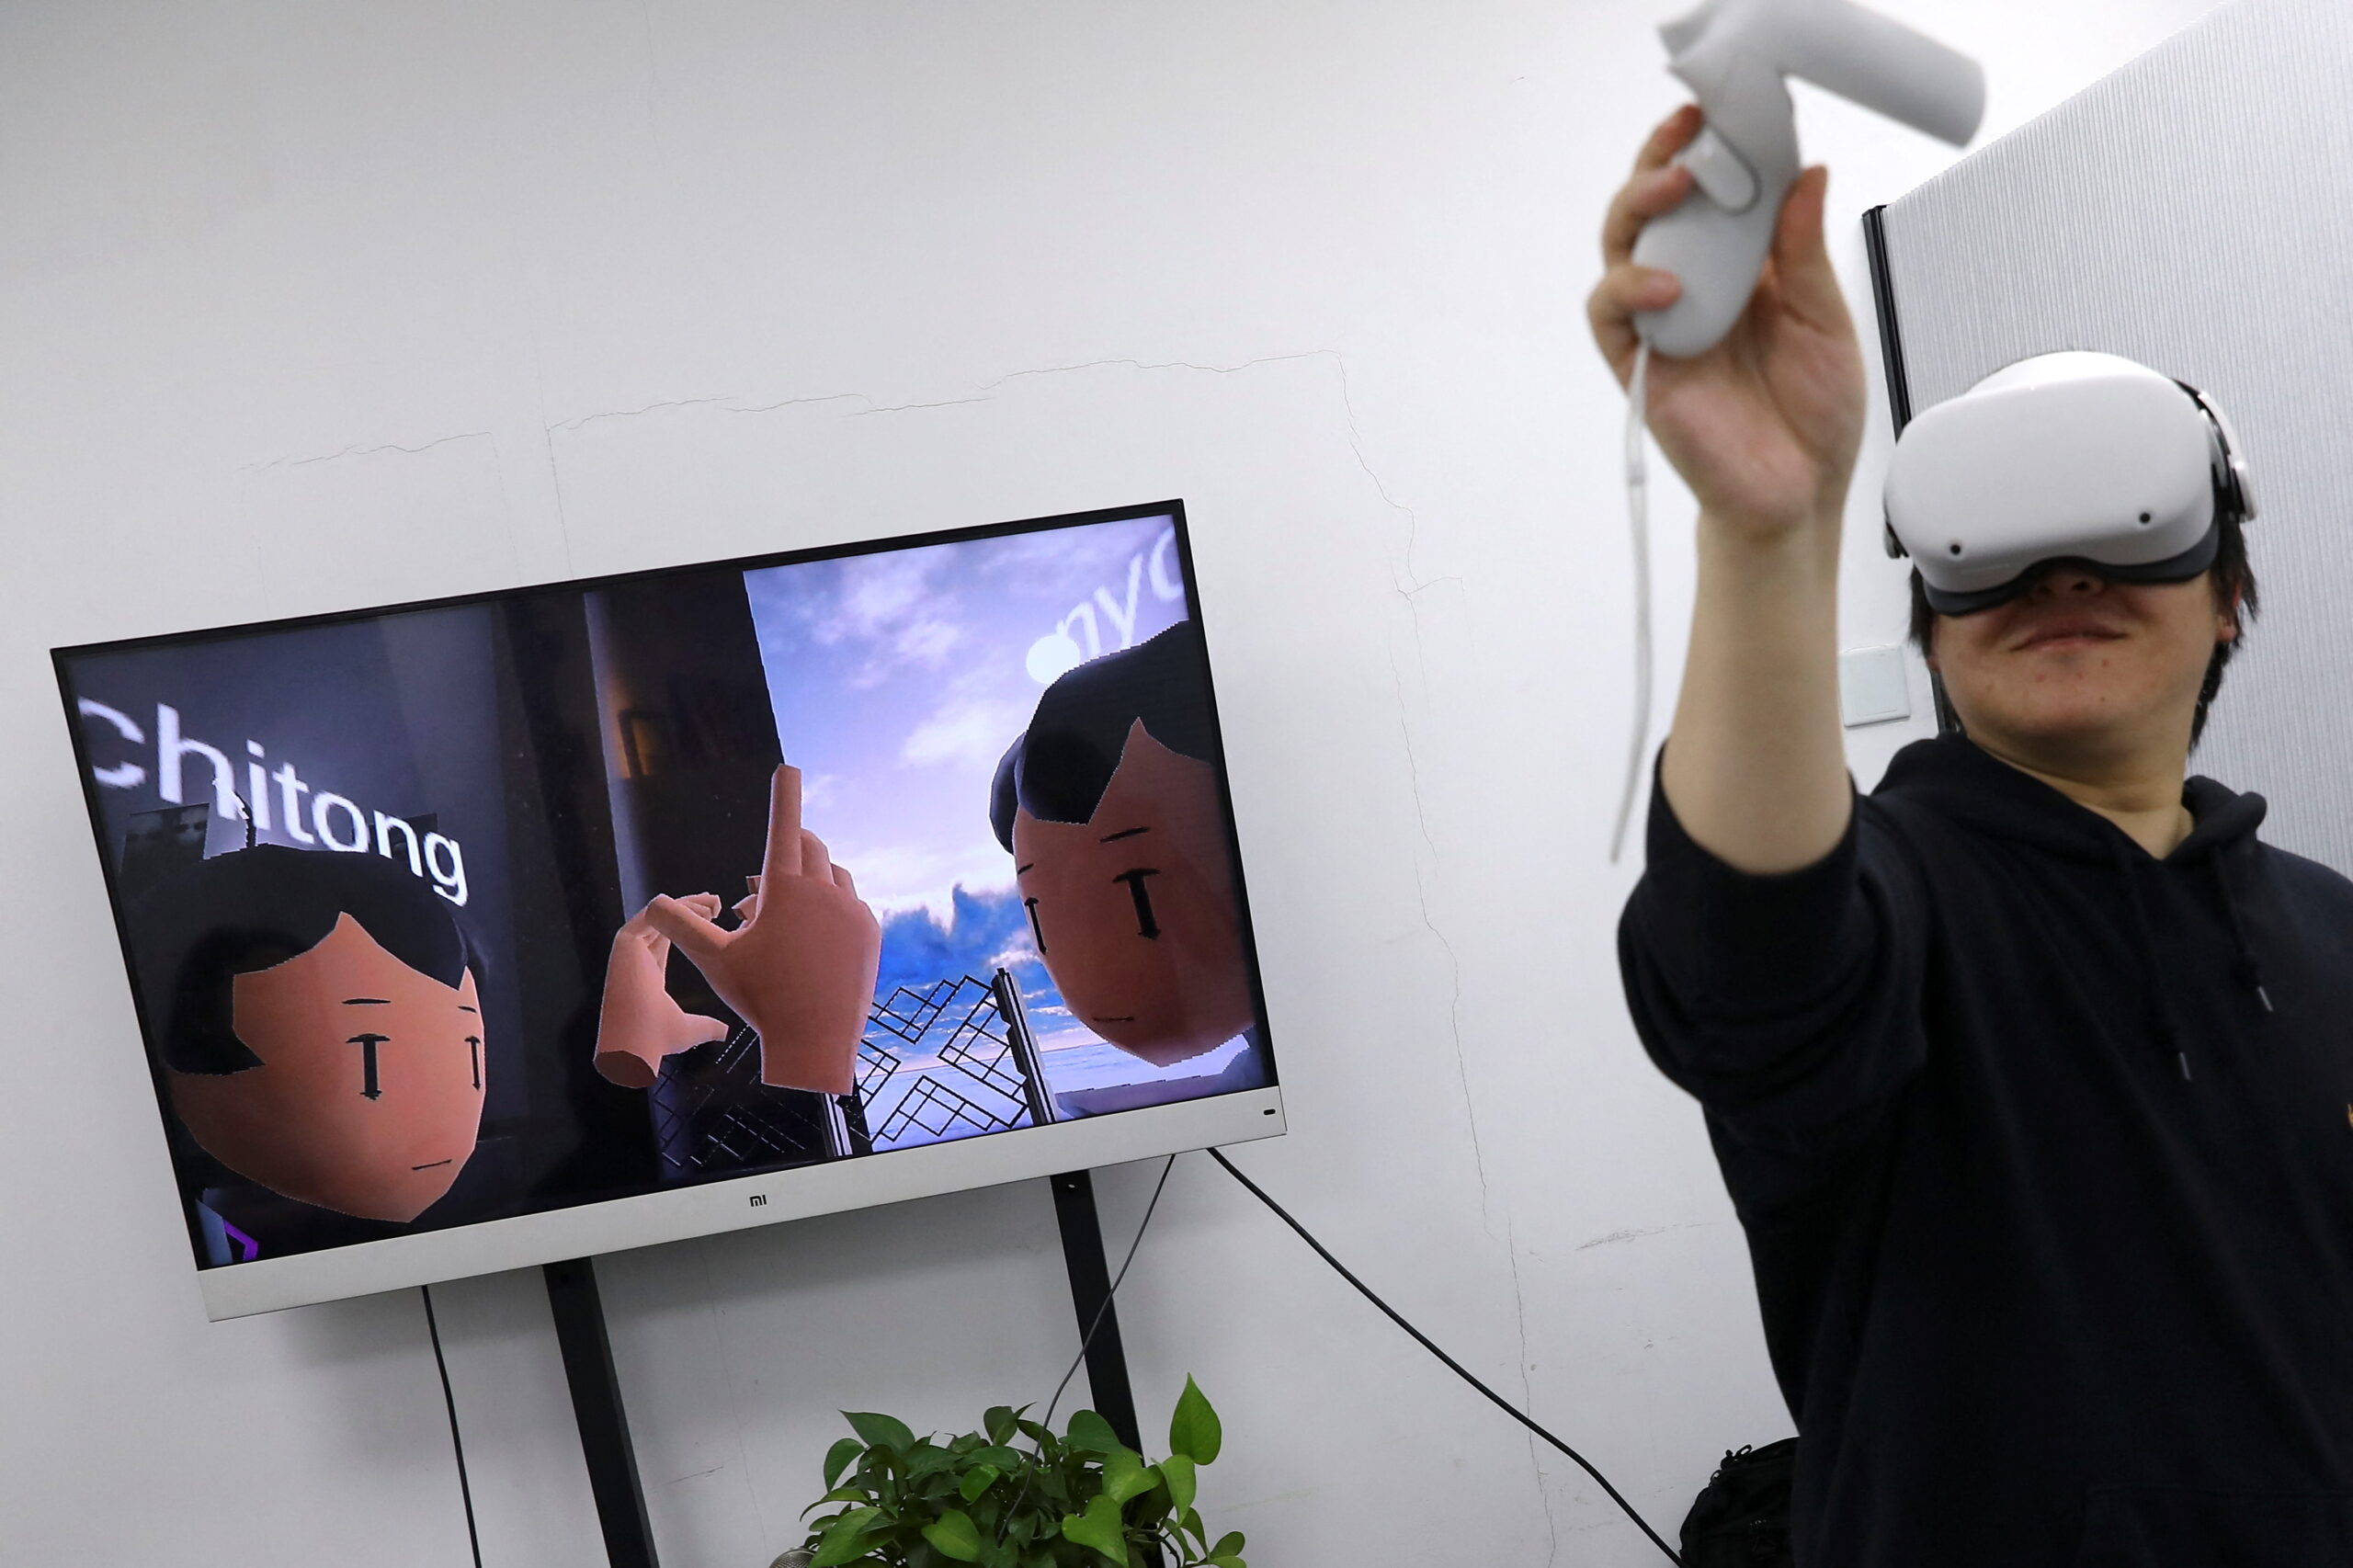  Пан Боханг, основатель социальной игровой платформы виртуальной реальности vHome в гарнитуре Meta Oculus VR. Пекин, Китай. 21 января 2022 года. Tingshu Wang/REUTERS/Scanpix/LETA